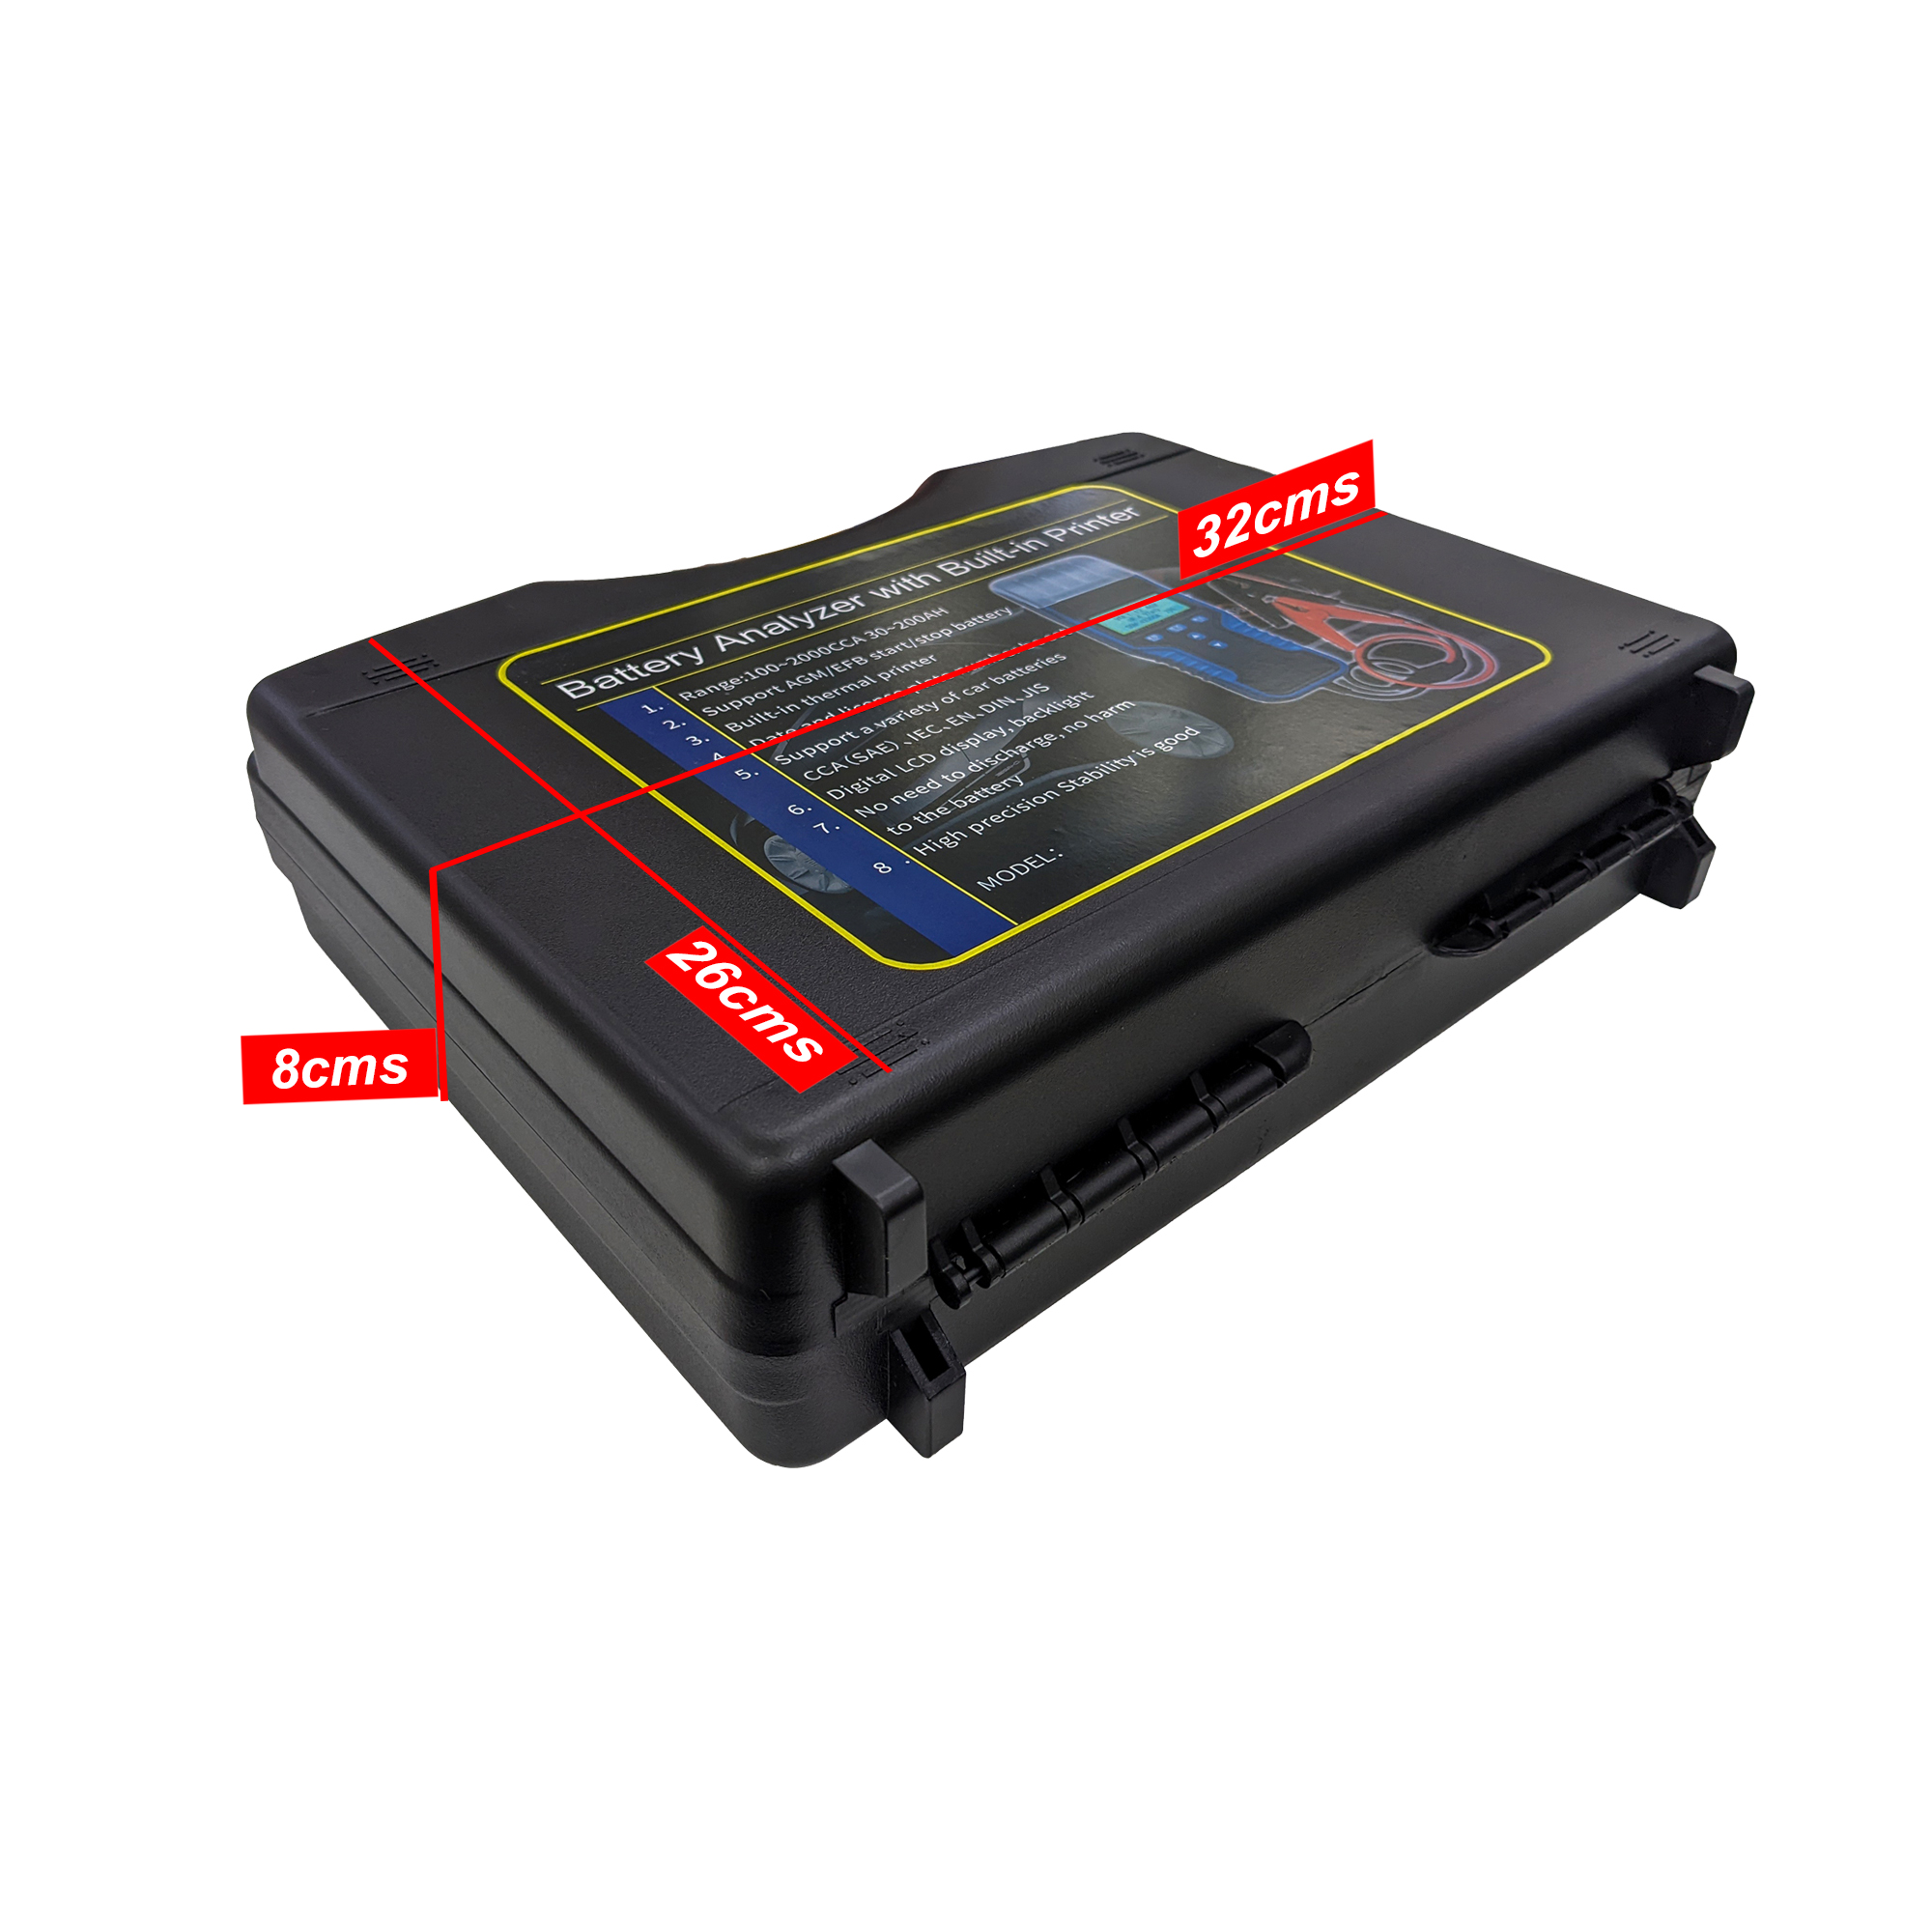 Car Battery Analyzer with Printer